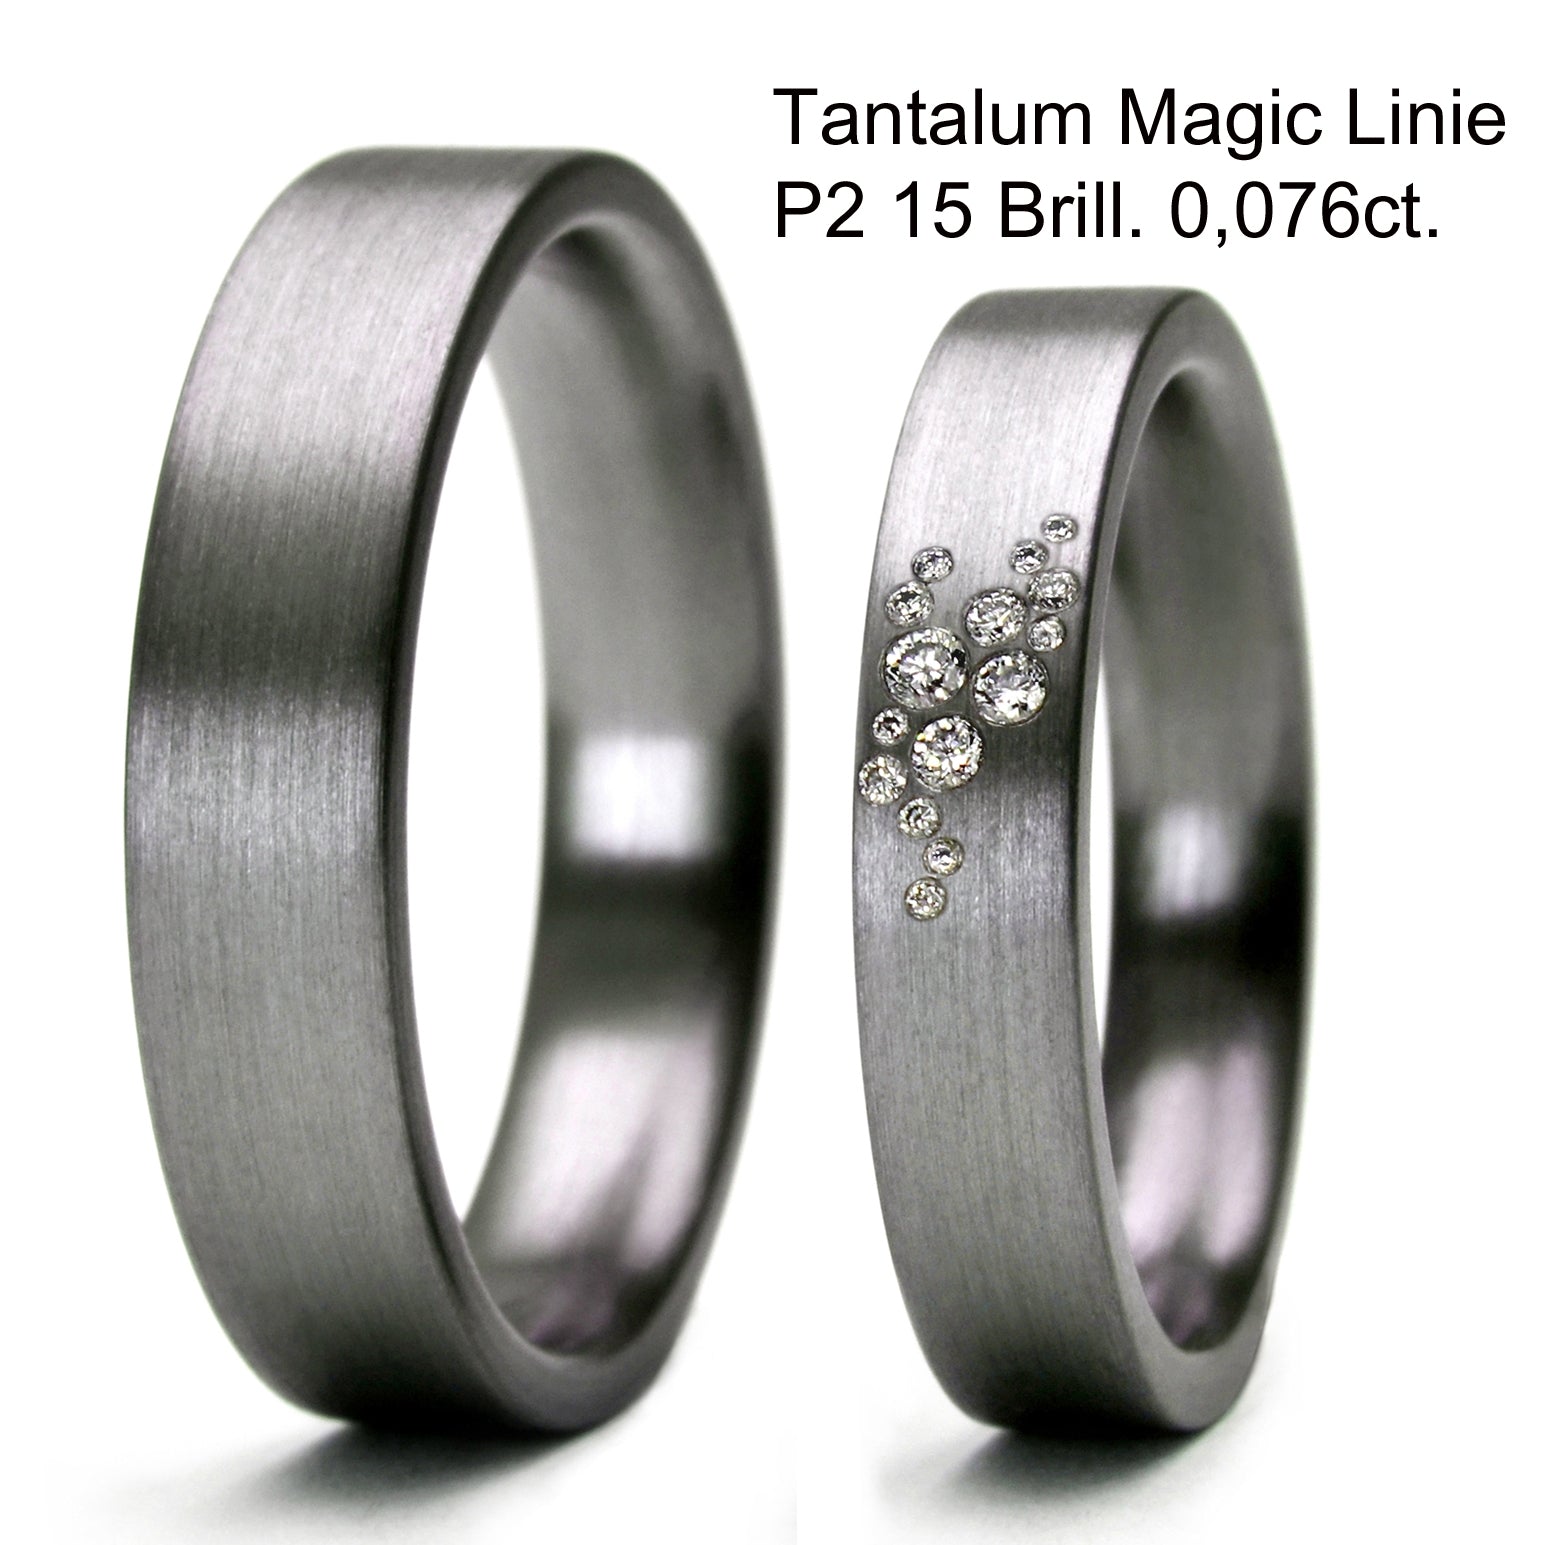 Tantal Ringe, Tantalum Magic Paarringe 4+5 mm linie P2 , 15 Brillanten